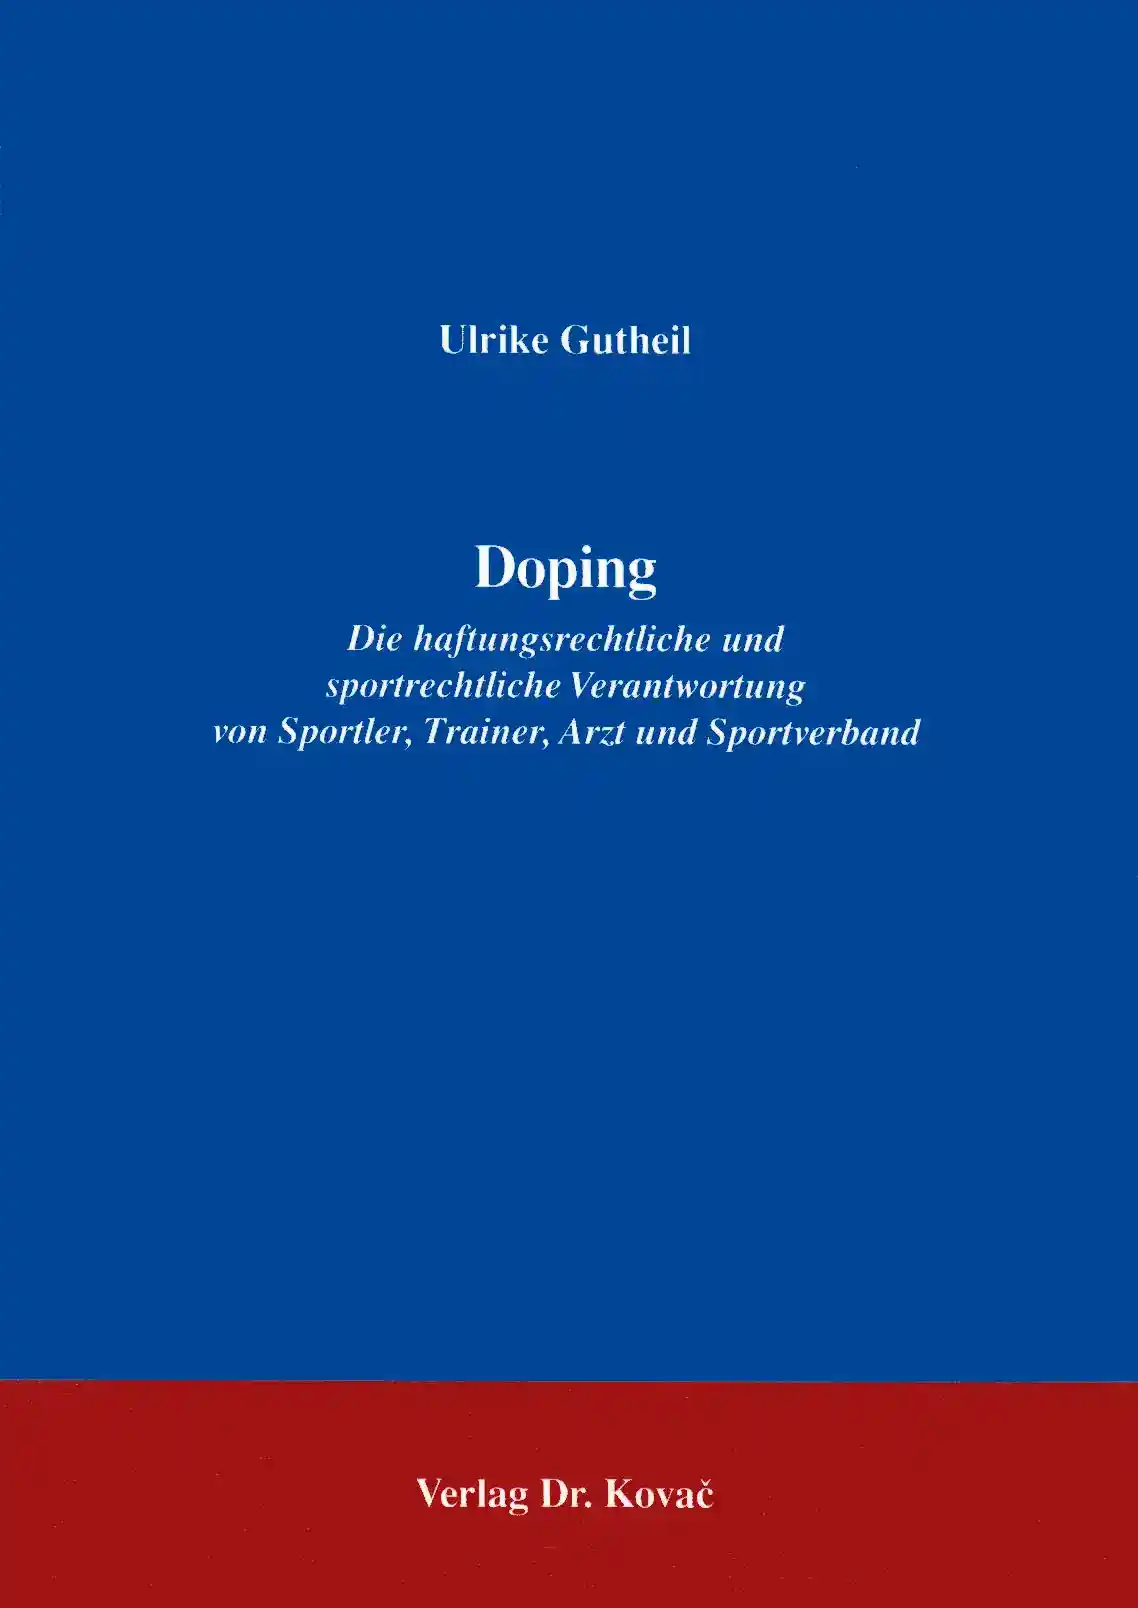 Doping (Forschungsarbeit)